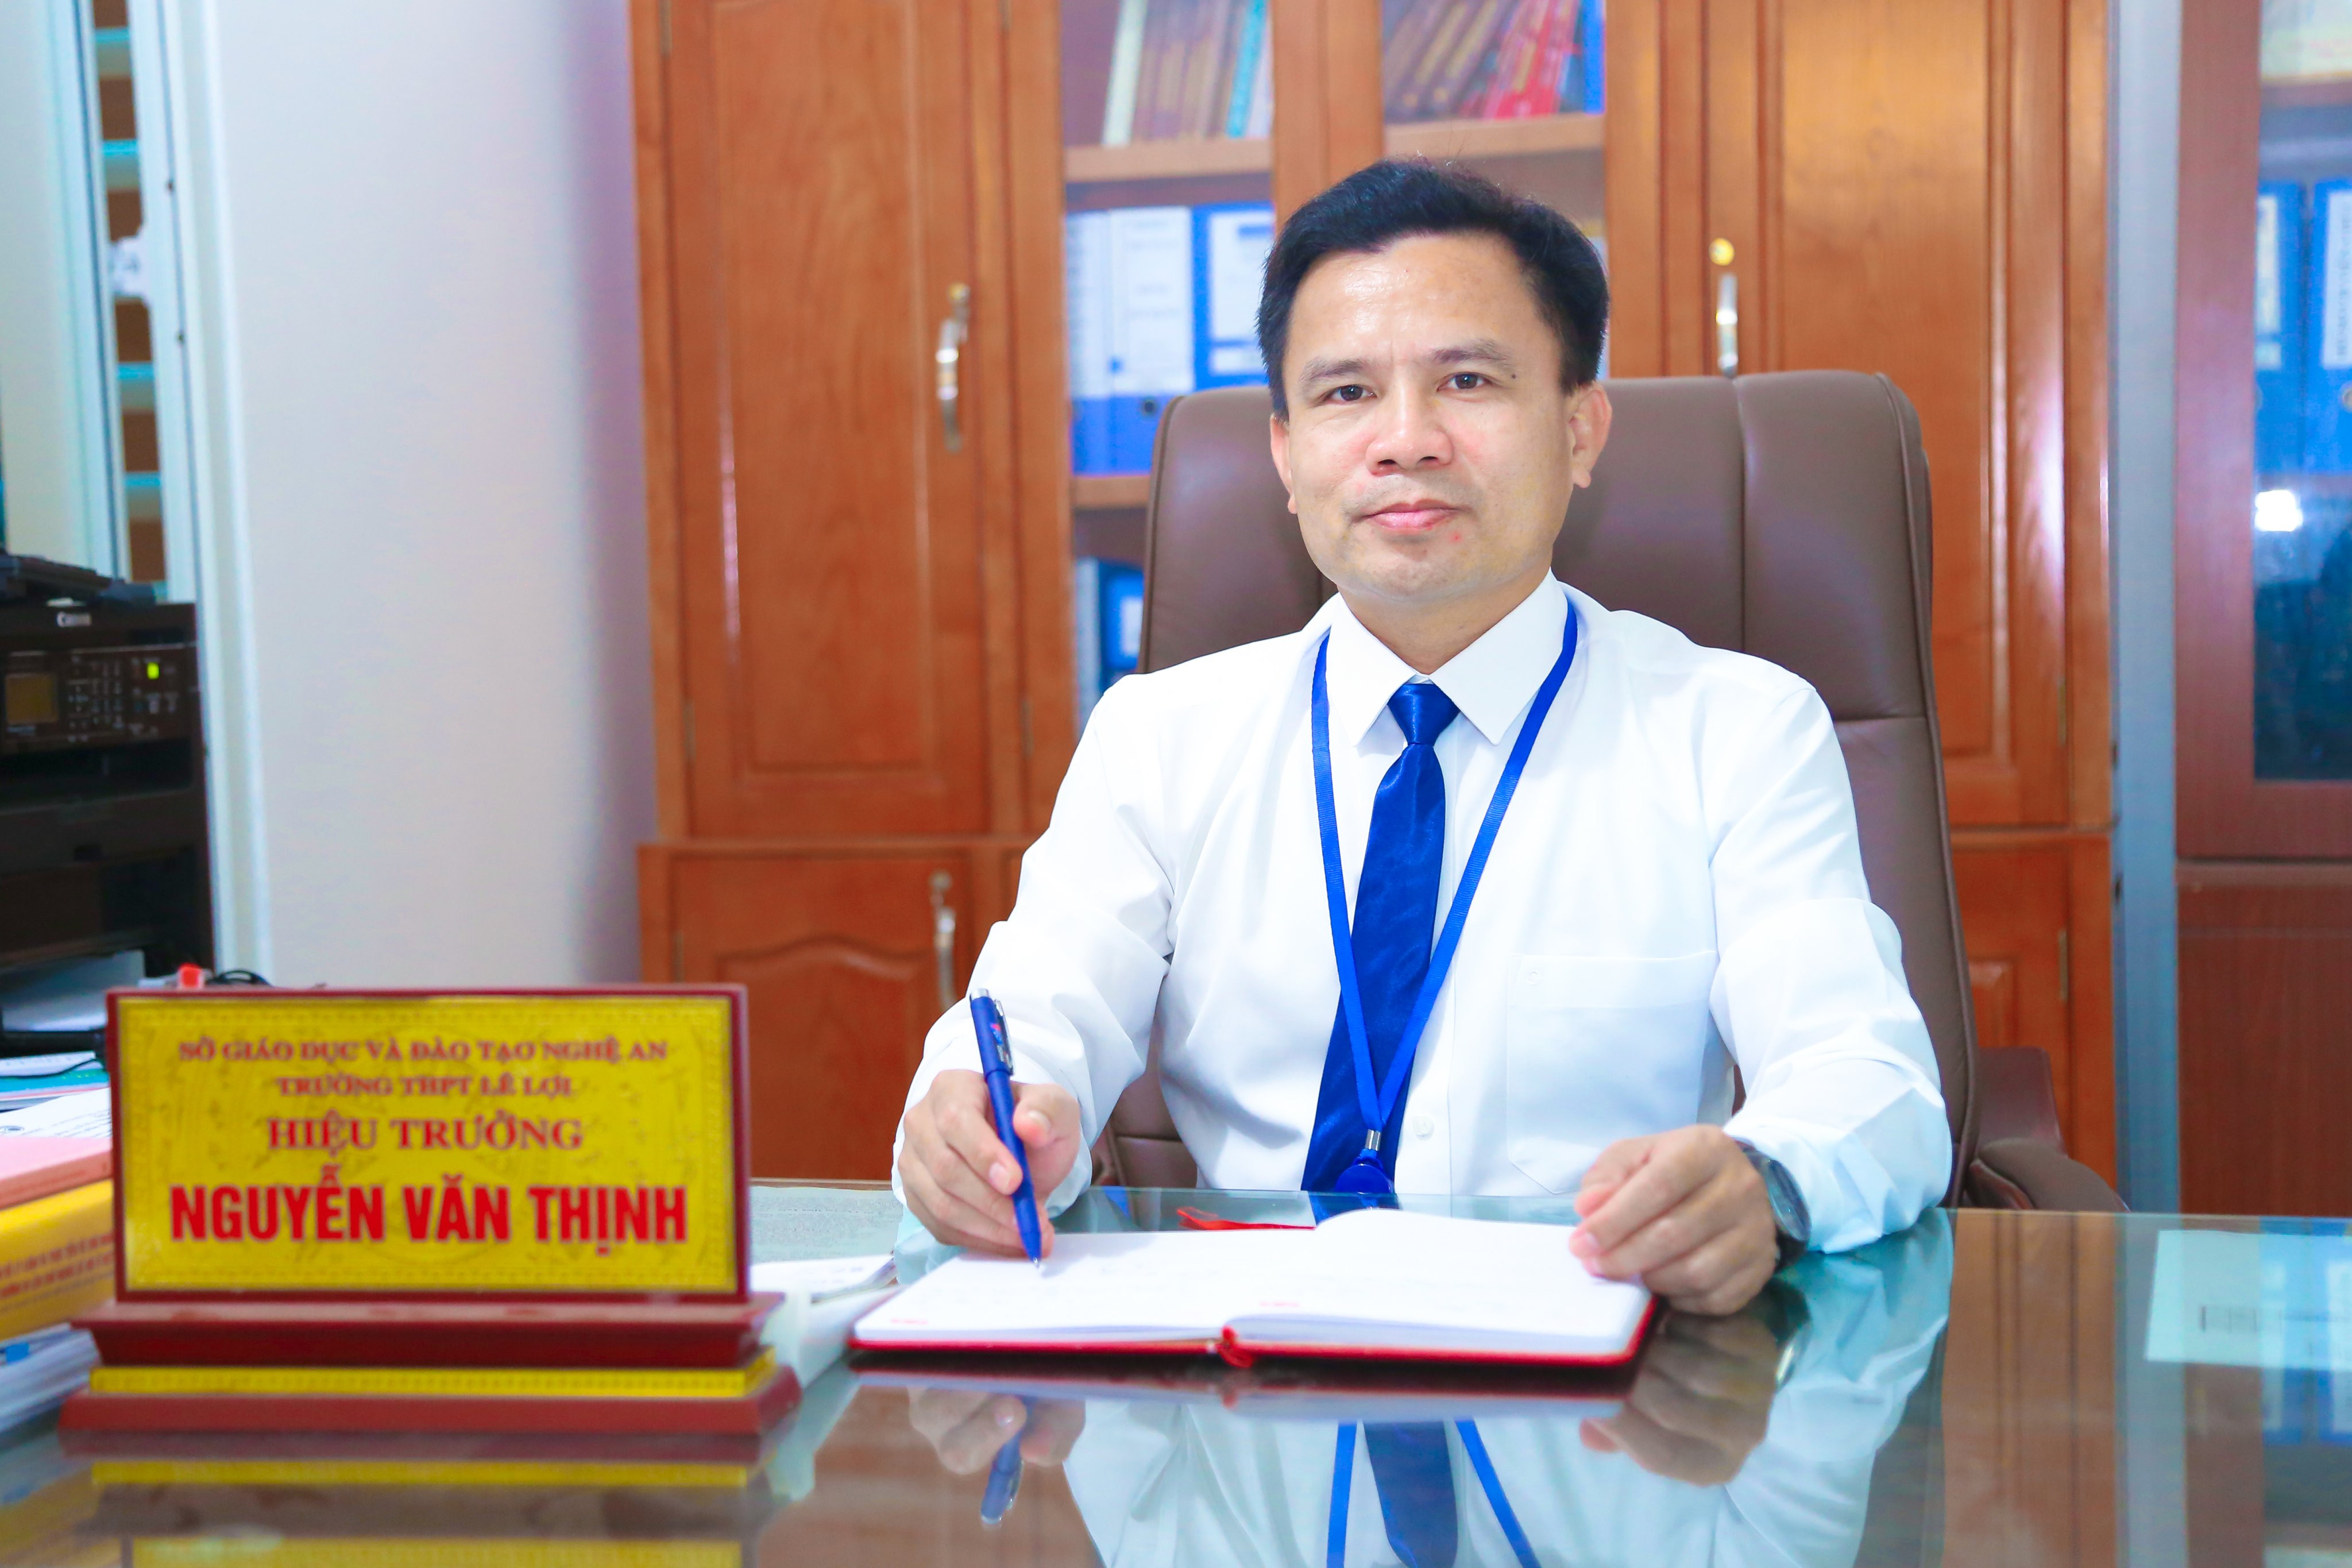  Thầy giáo Nguyễn Văn Thịnh - Hiệu trưởng nhà trường. Ảnh: Đình Tuyên